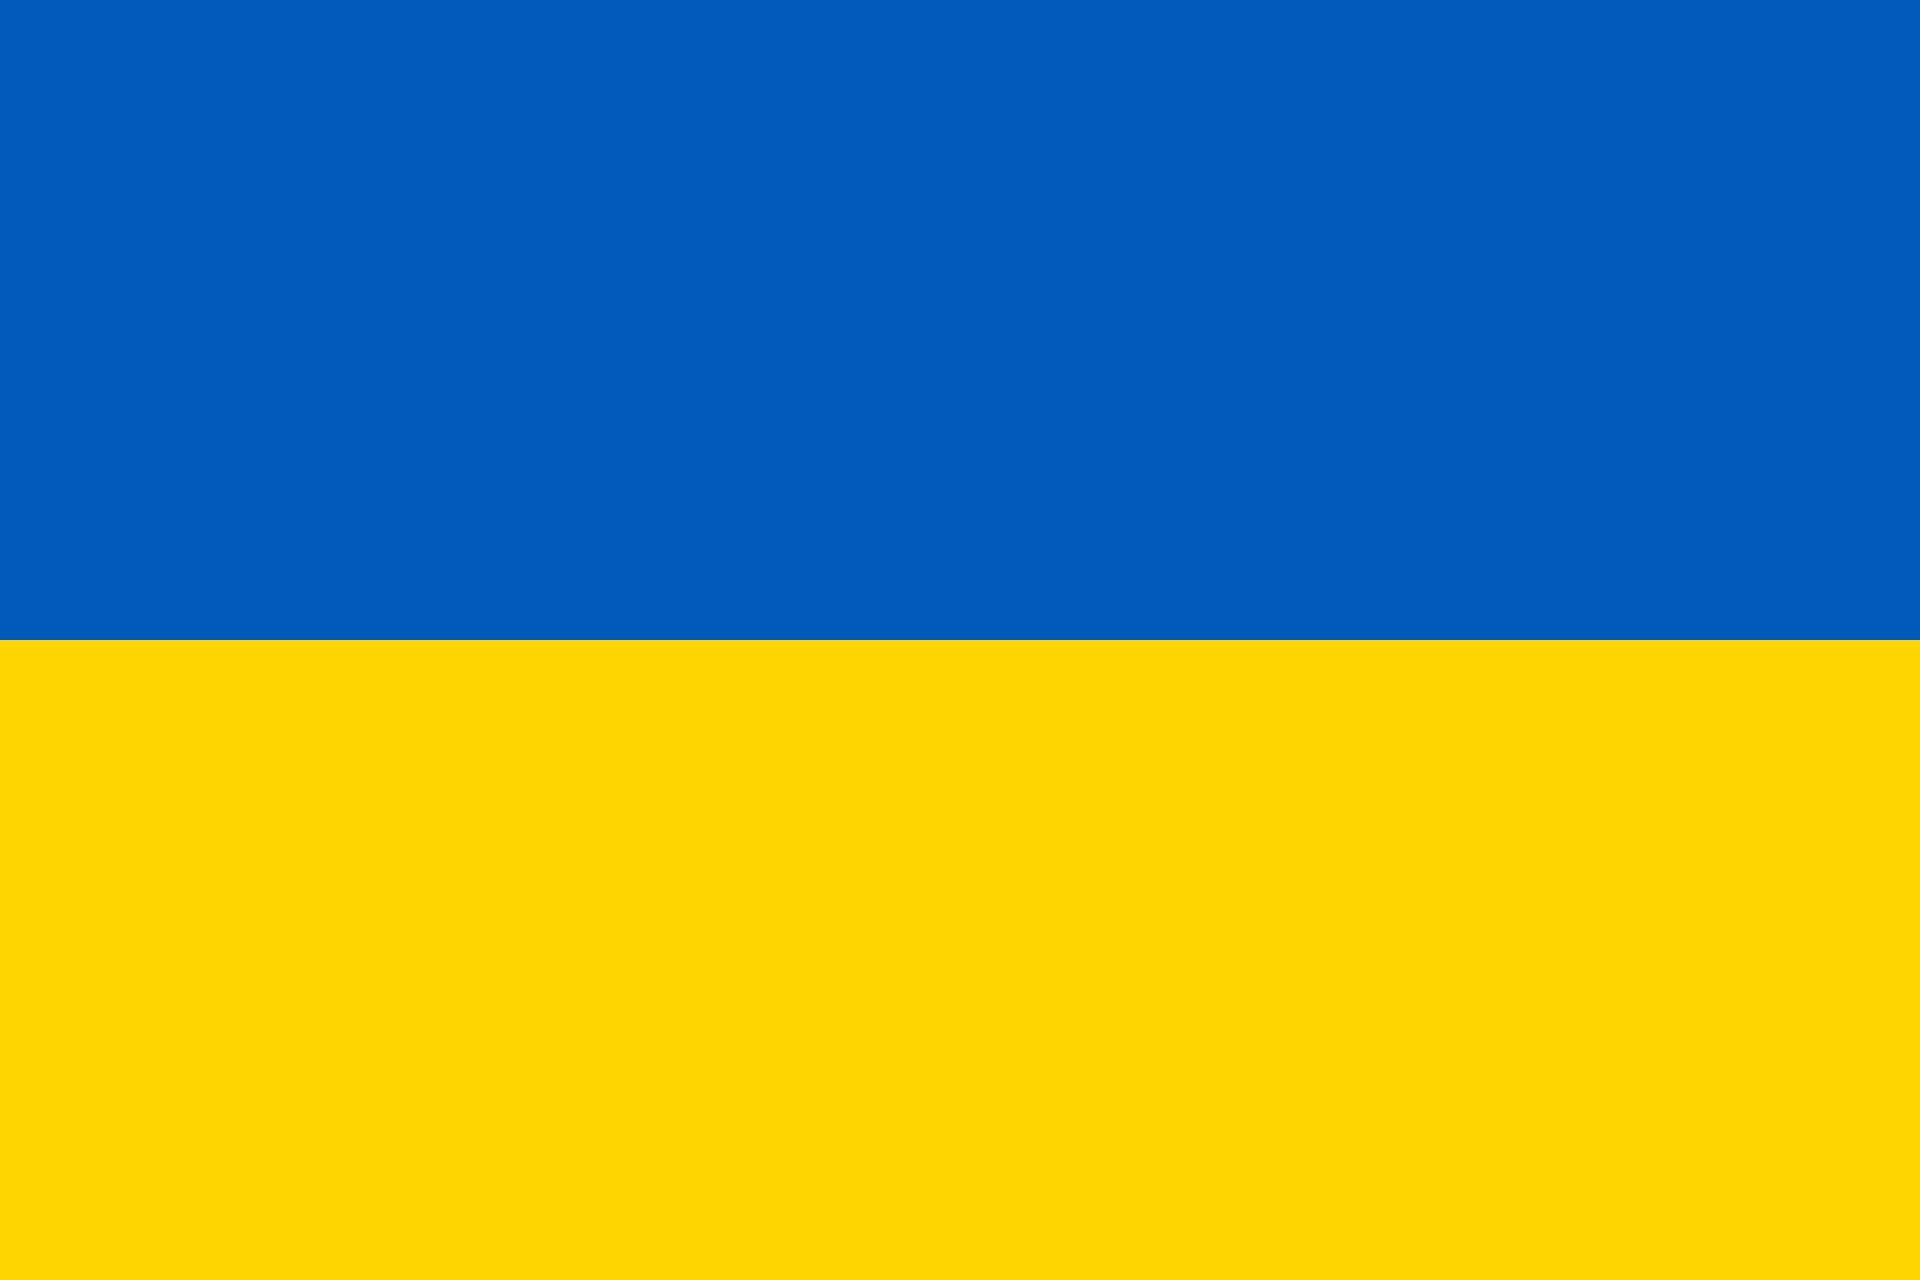 ウクライナ国旗の色の意味とは？